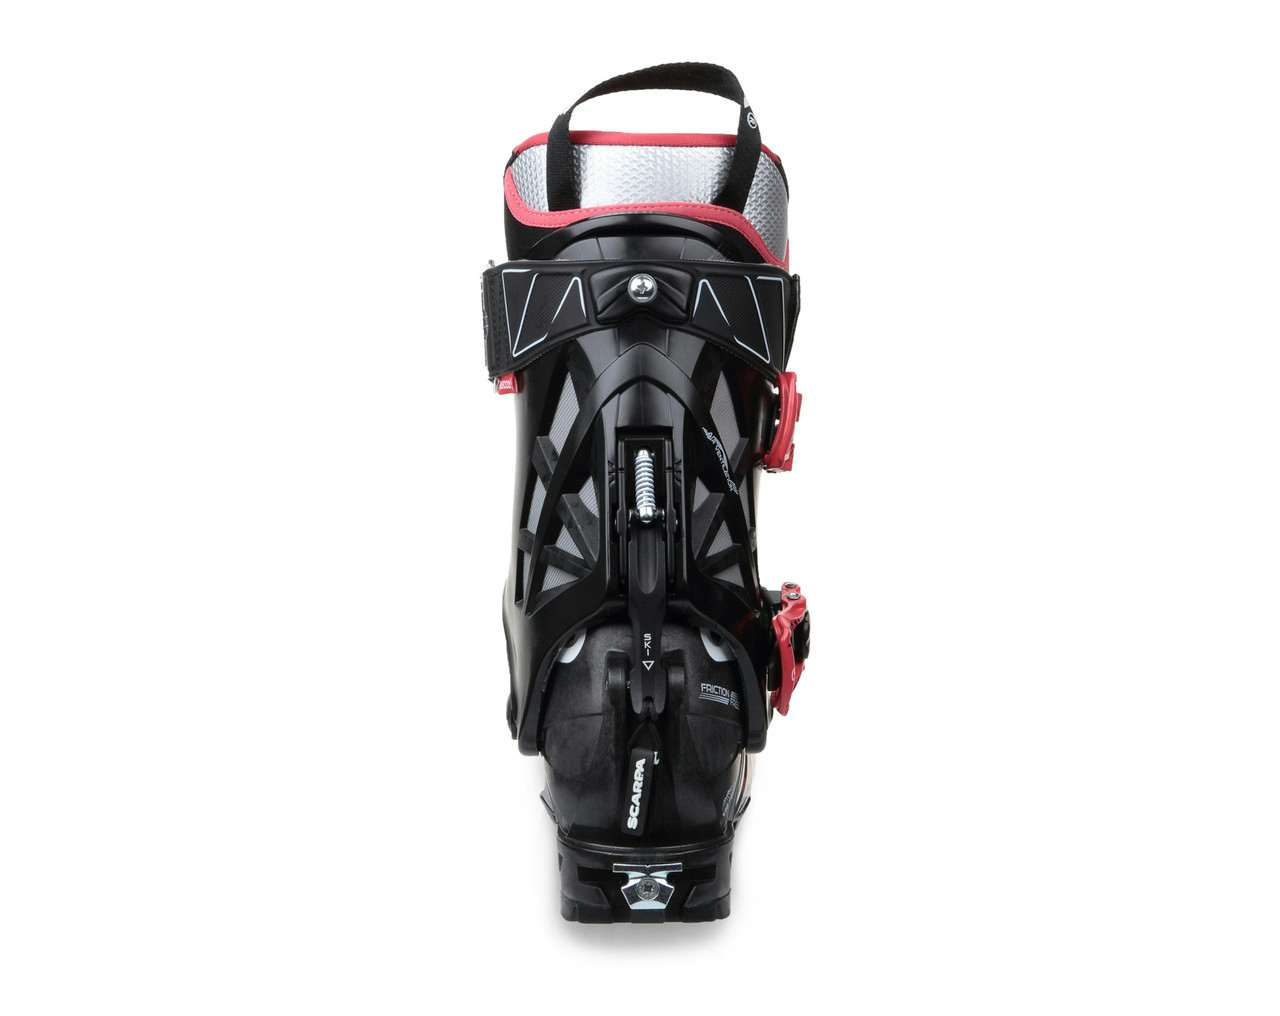 Bottes de ski Gea RS Blanc/Noir/Rouge chaud